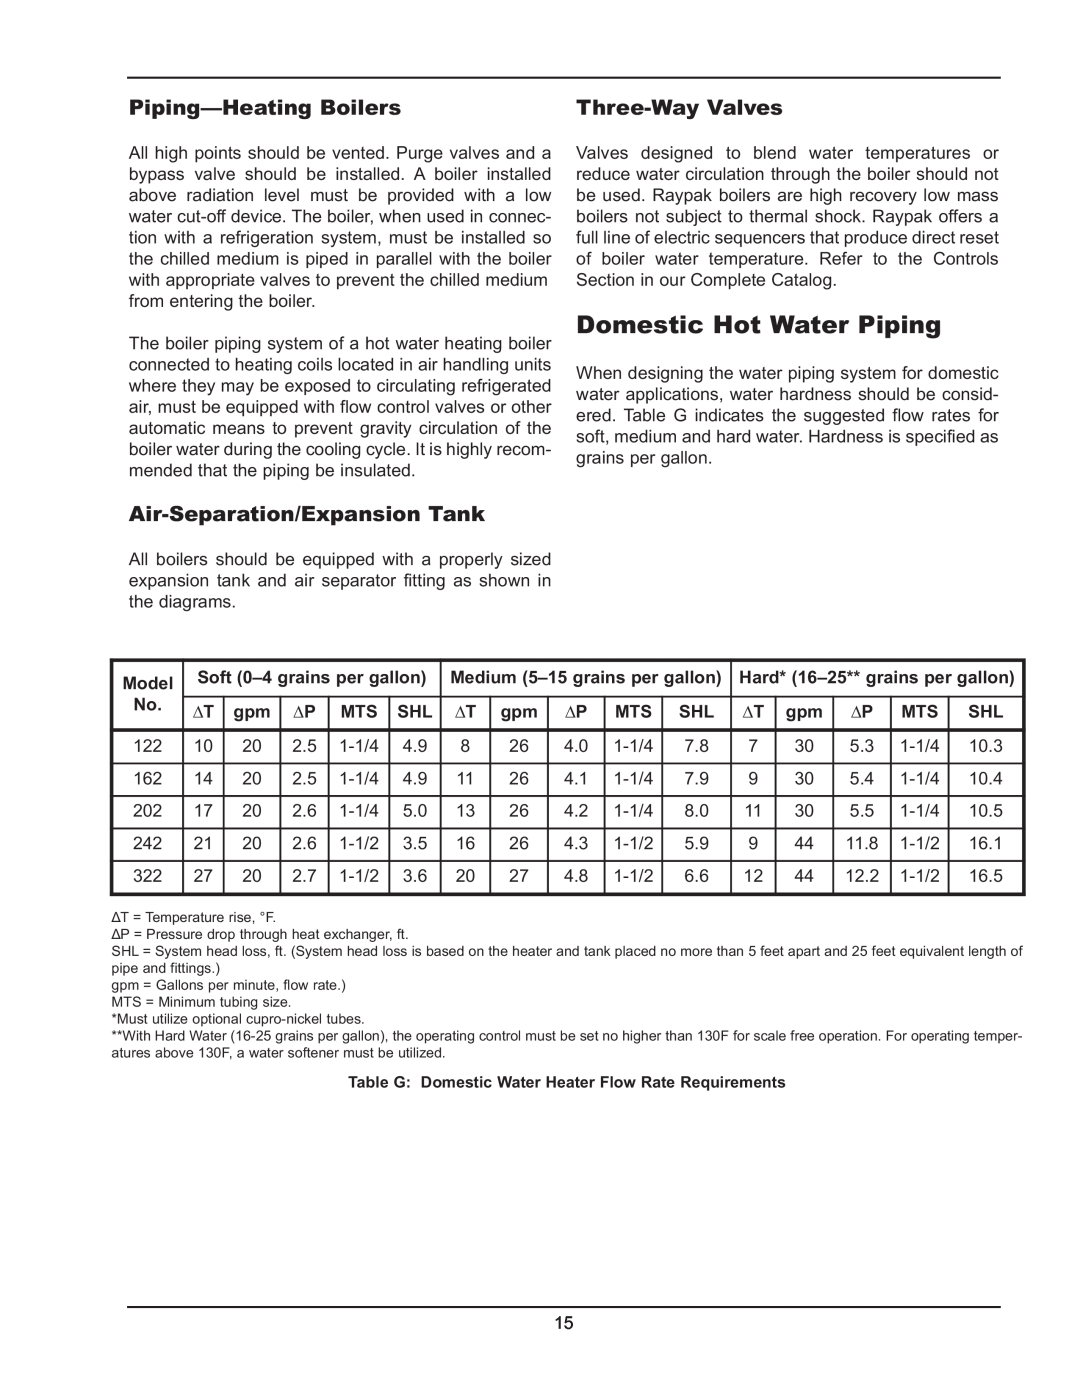 Raypak 122-322 manual Domestic Hot Water Piping, Piping-HeatingBoilers, Air-Separation/ExpansionTank, Three-WayValves 